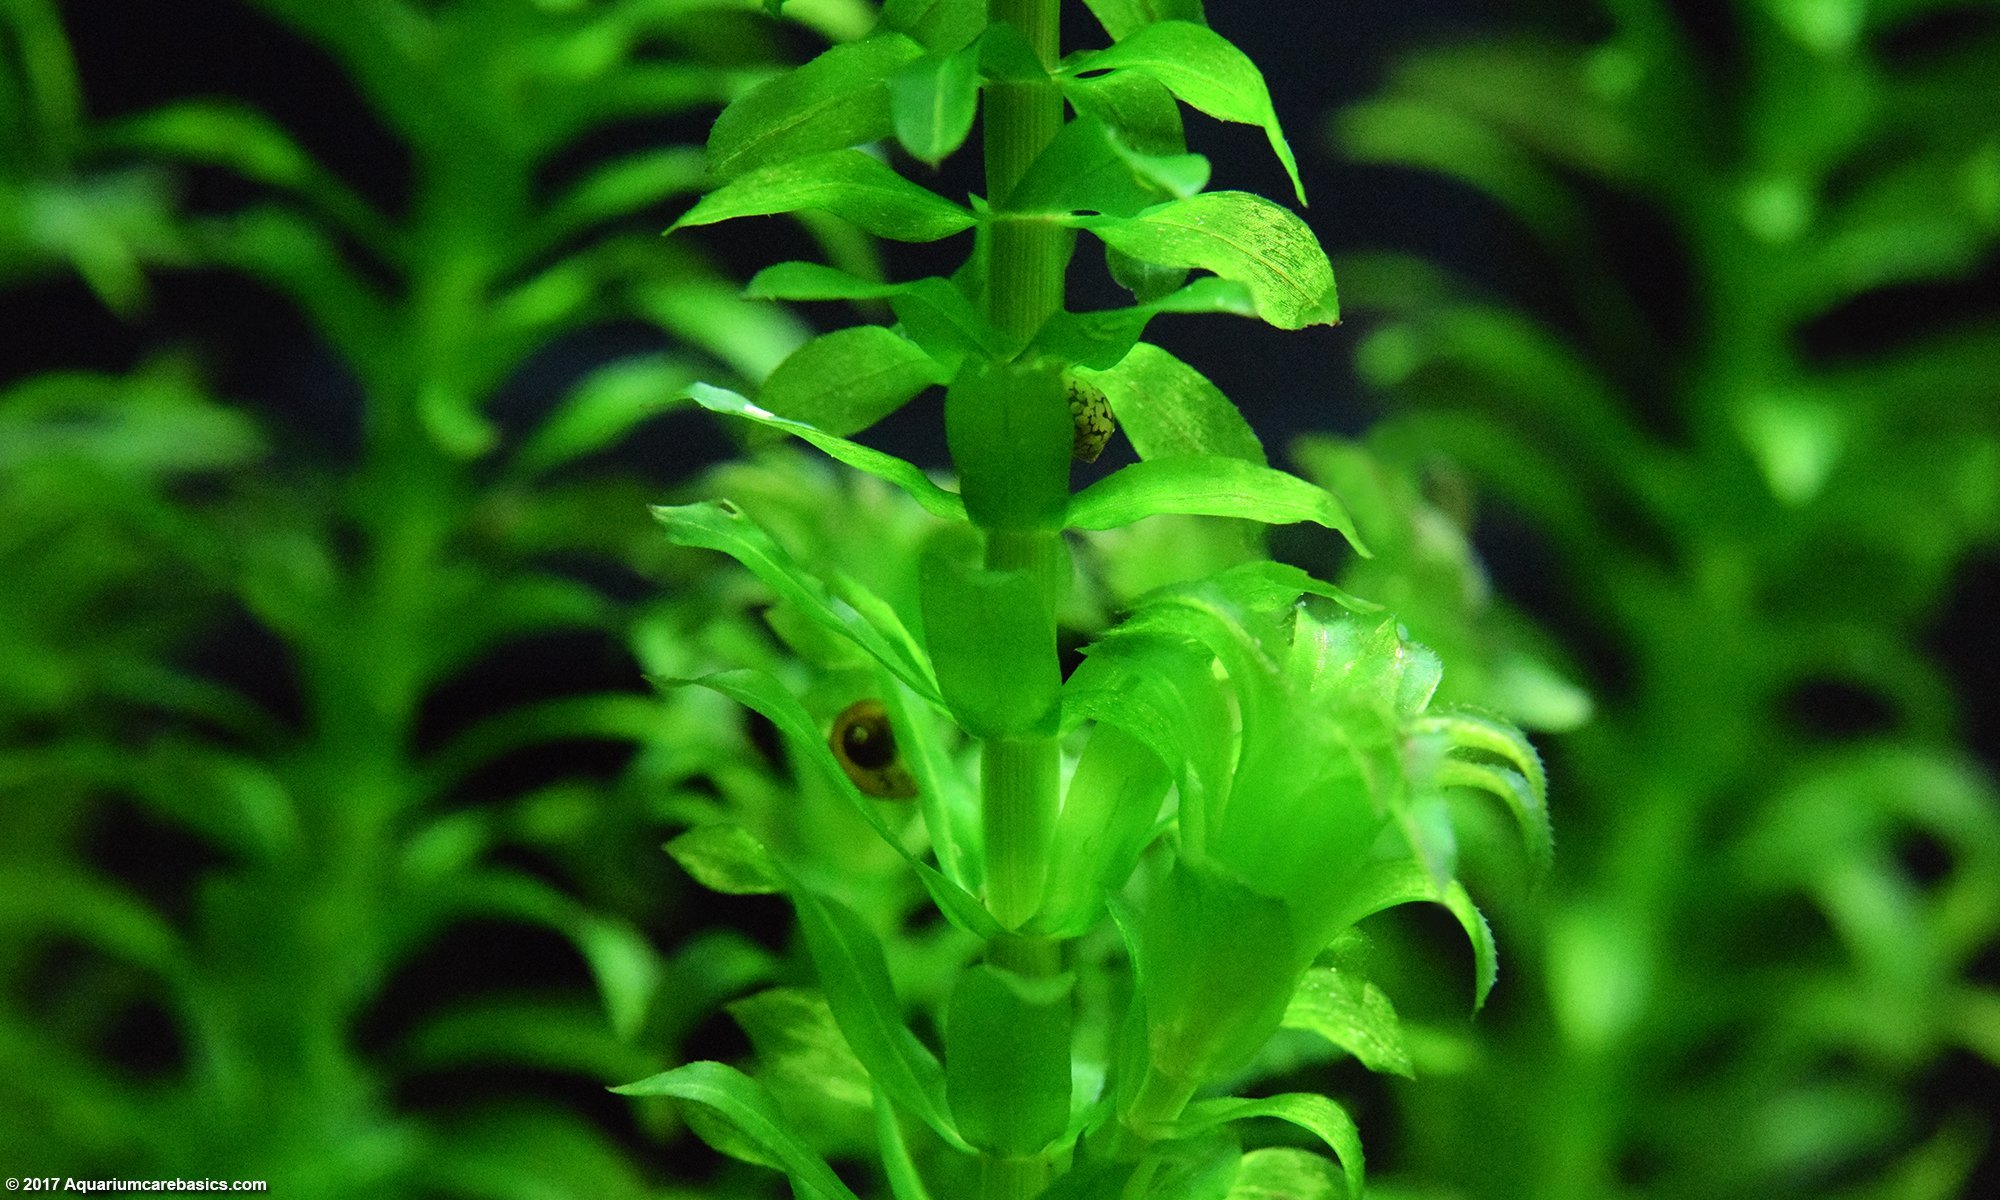 Anacharis aquarium plant care